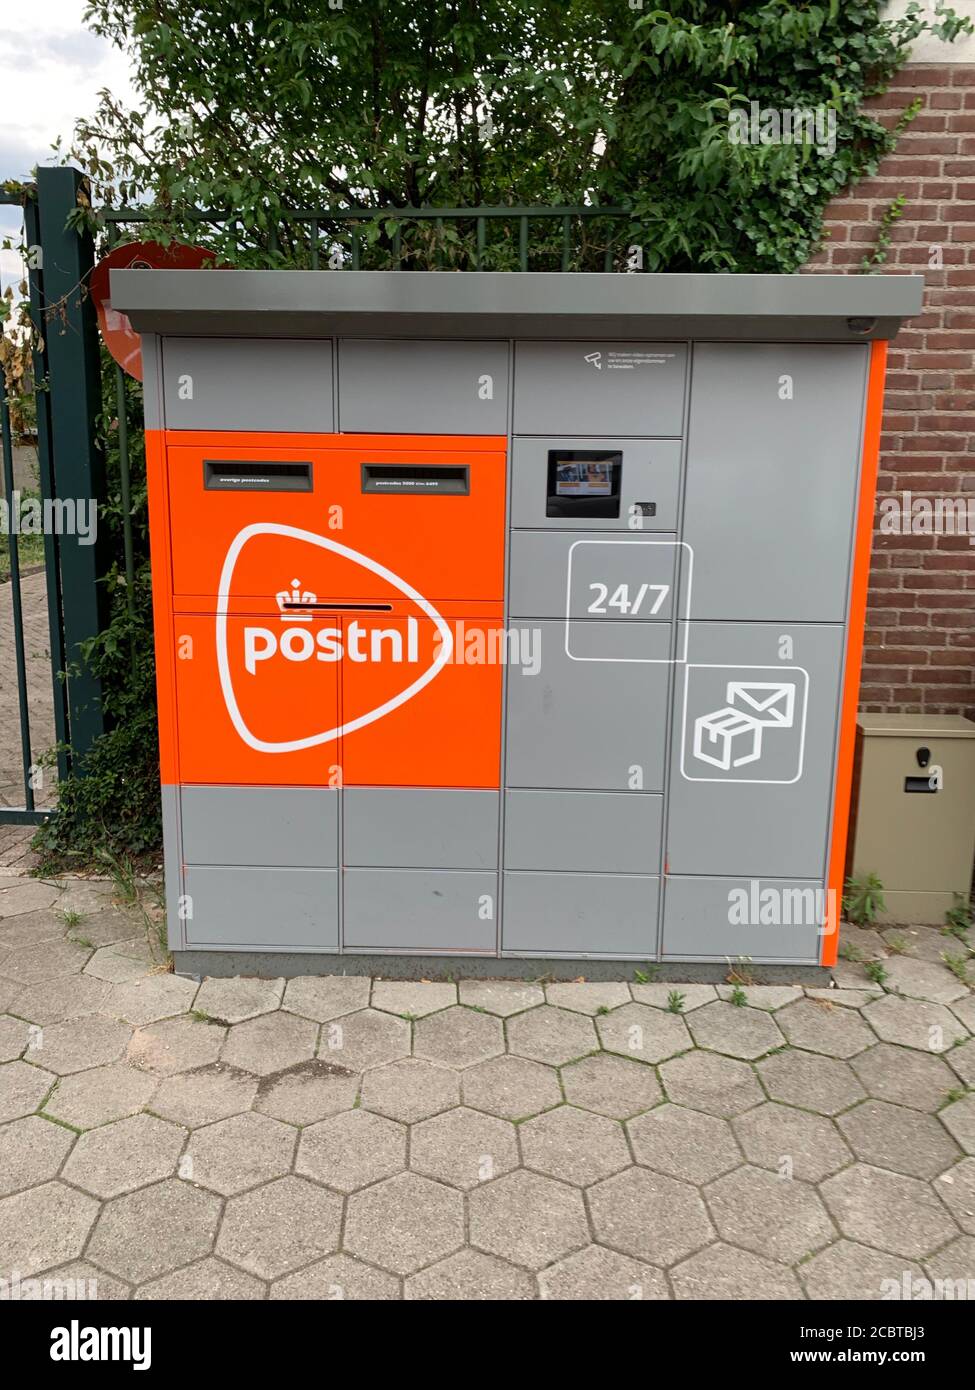 Máquina de paquetería y cartas PostNL (pakketautomaat) en la ciudad de Tilburg. Tilburg, Brabante del Norte / países Bajos. Foto de stock